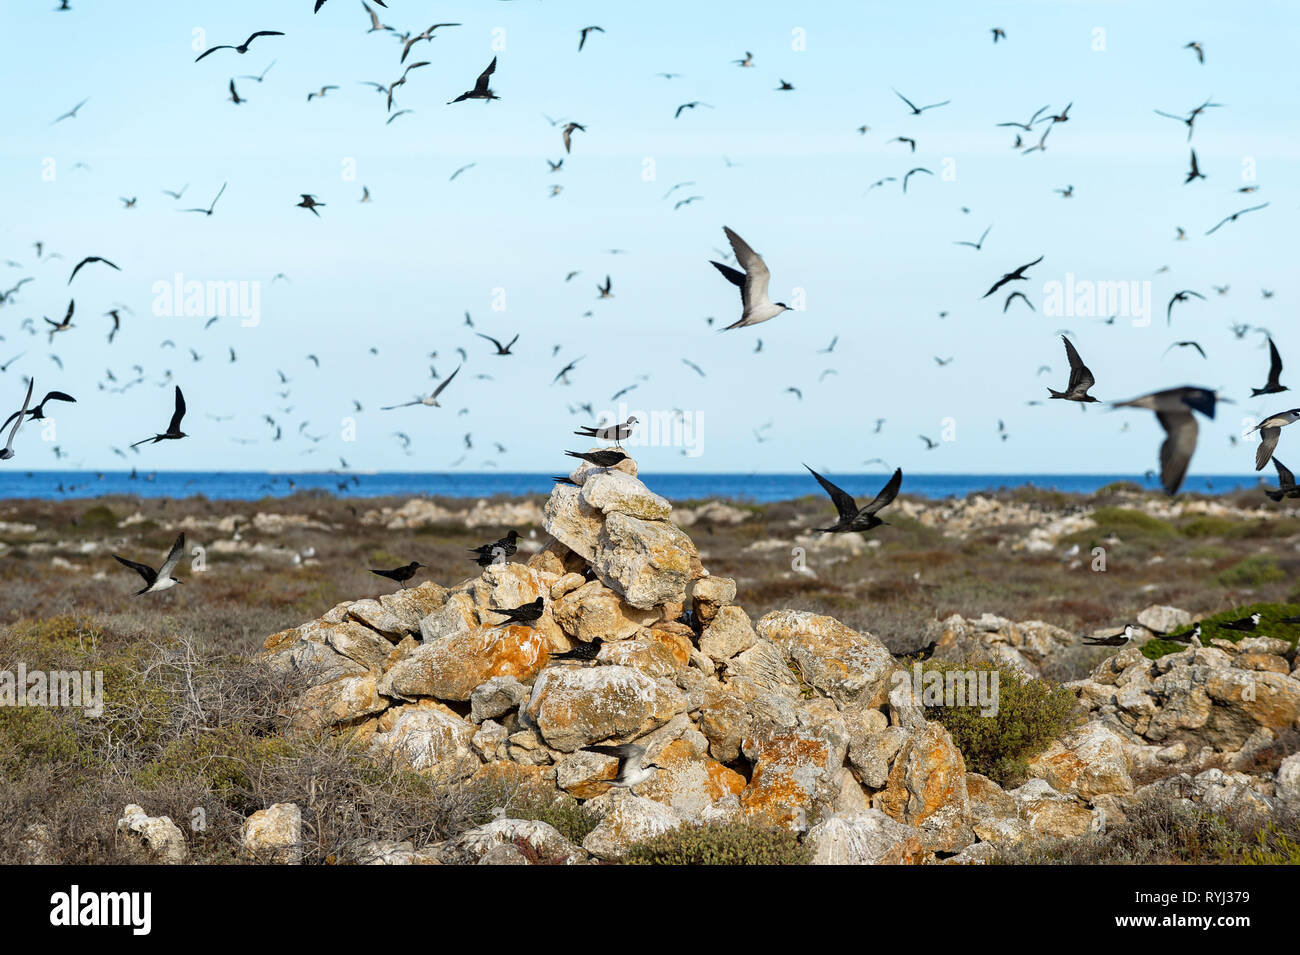 Fuligginosa sterne e cuneo Shrearwaters codato sulla Grande Isola di ratto, Houtman Abrolhos. Il Houtman Abrolhos isole si trovano a 60 chilometri al largo della costa della Geraldt Foto Stock